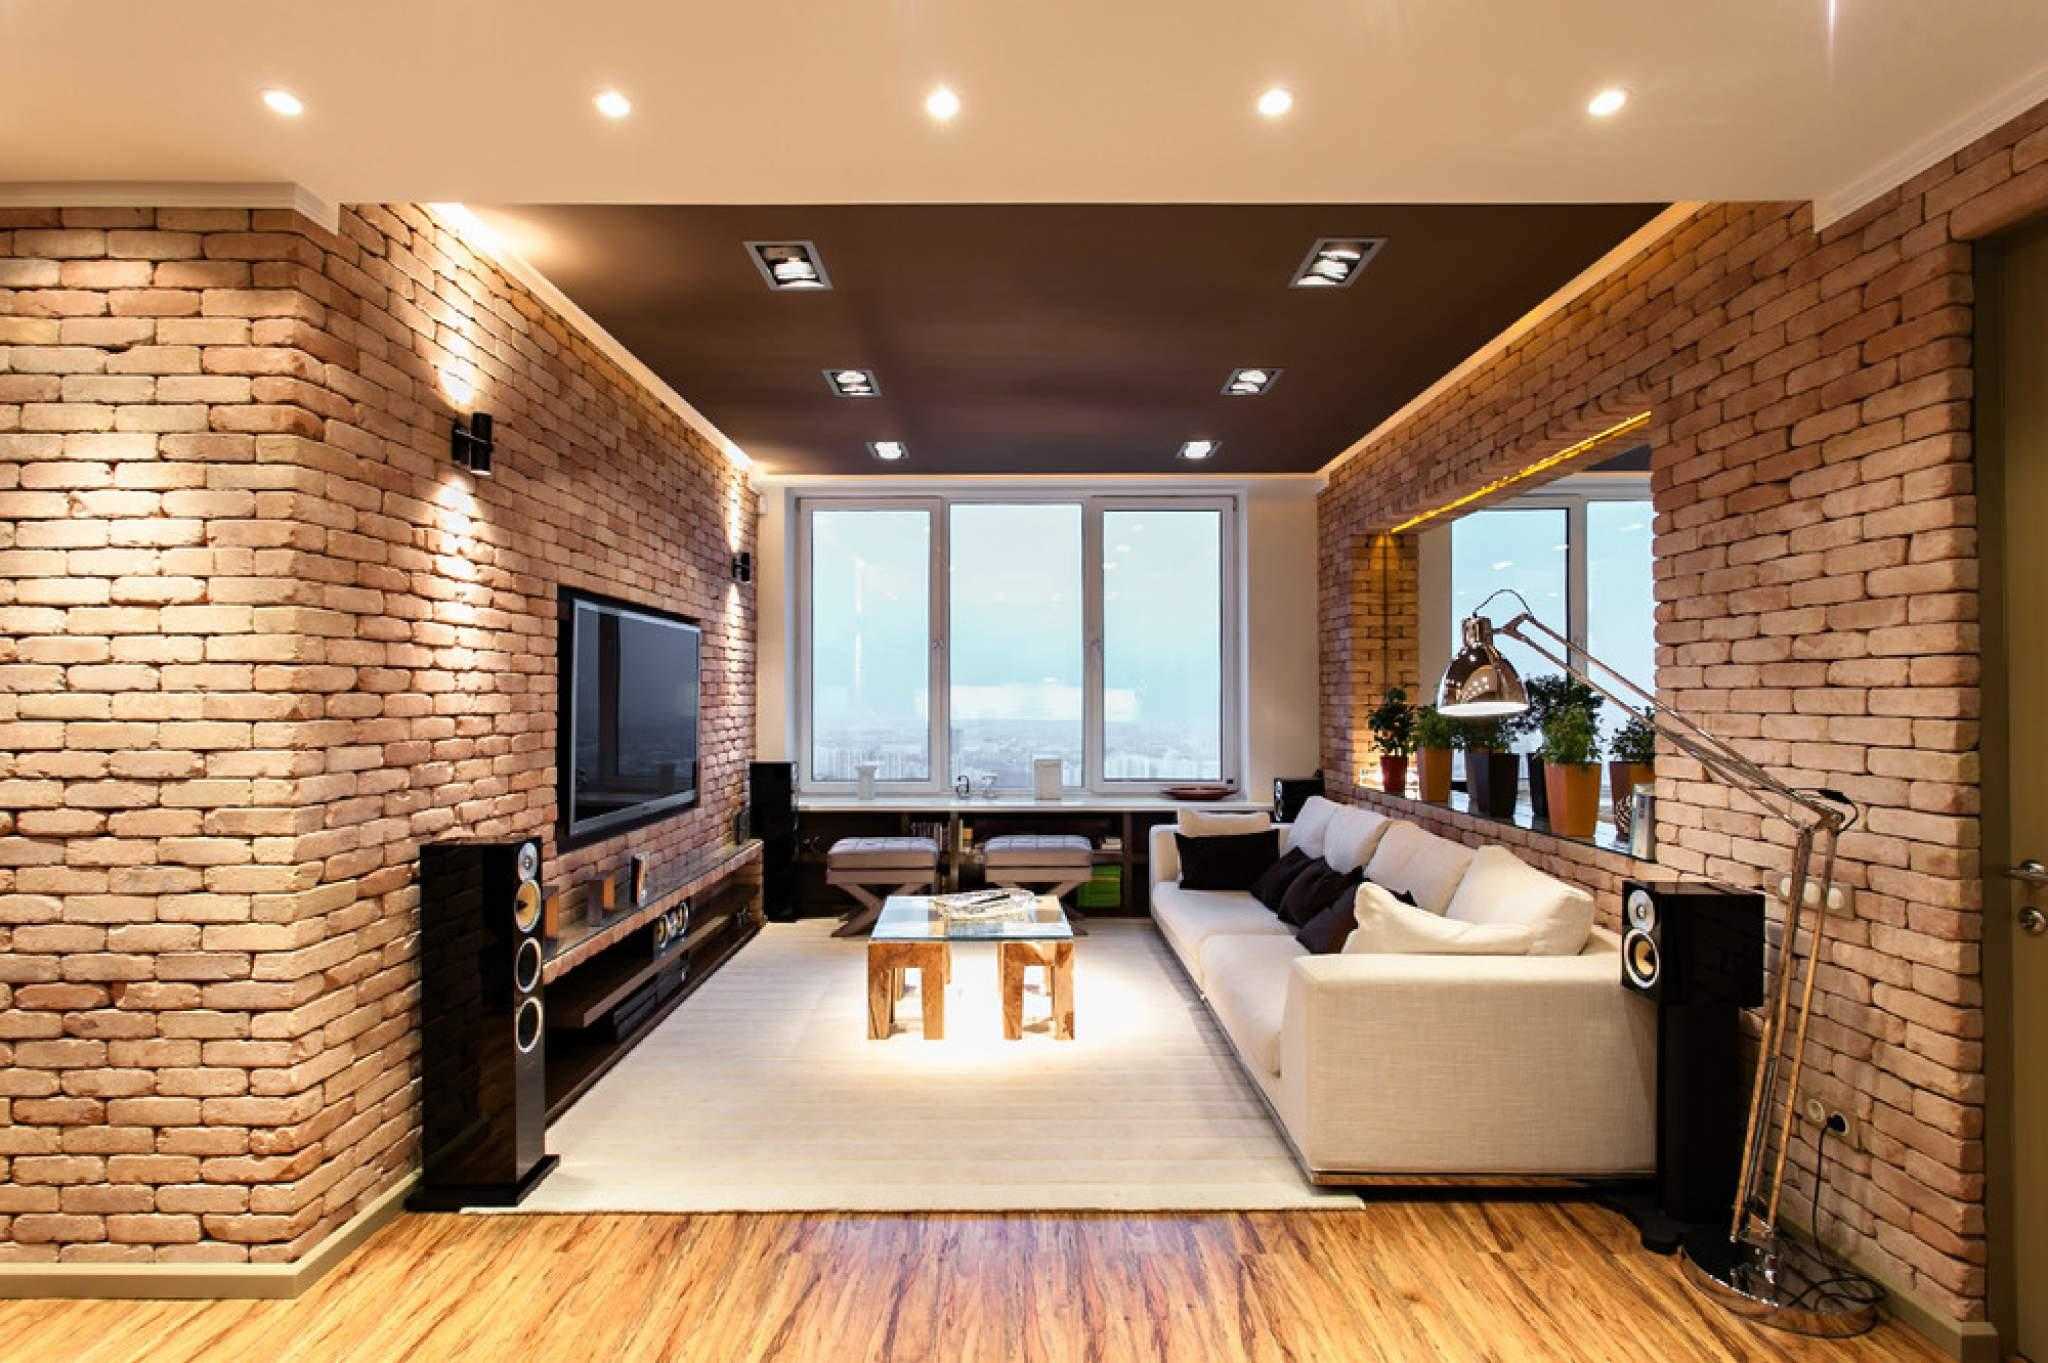 Фото с ремонтом квартир: Ремонт трёхкомнатной квартиры 133 кв. м в стиле ар-деко в ЖК Долина Сетунь